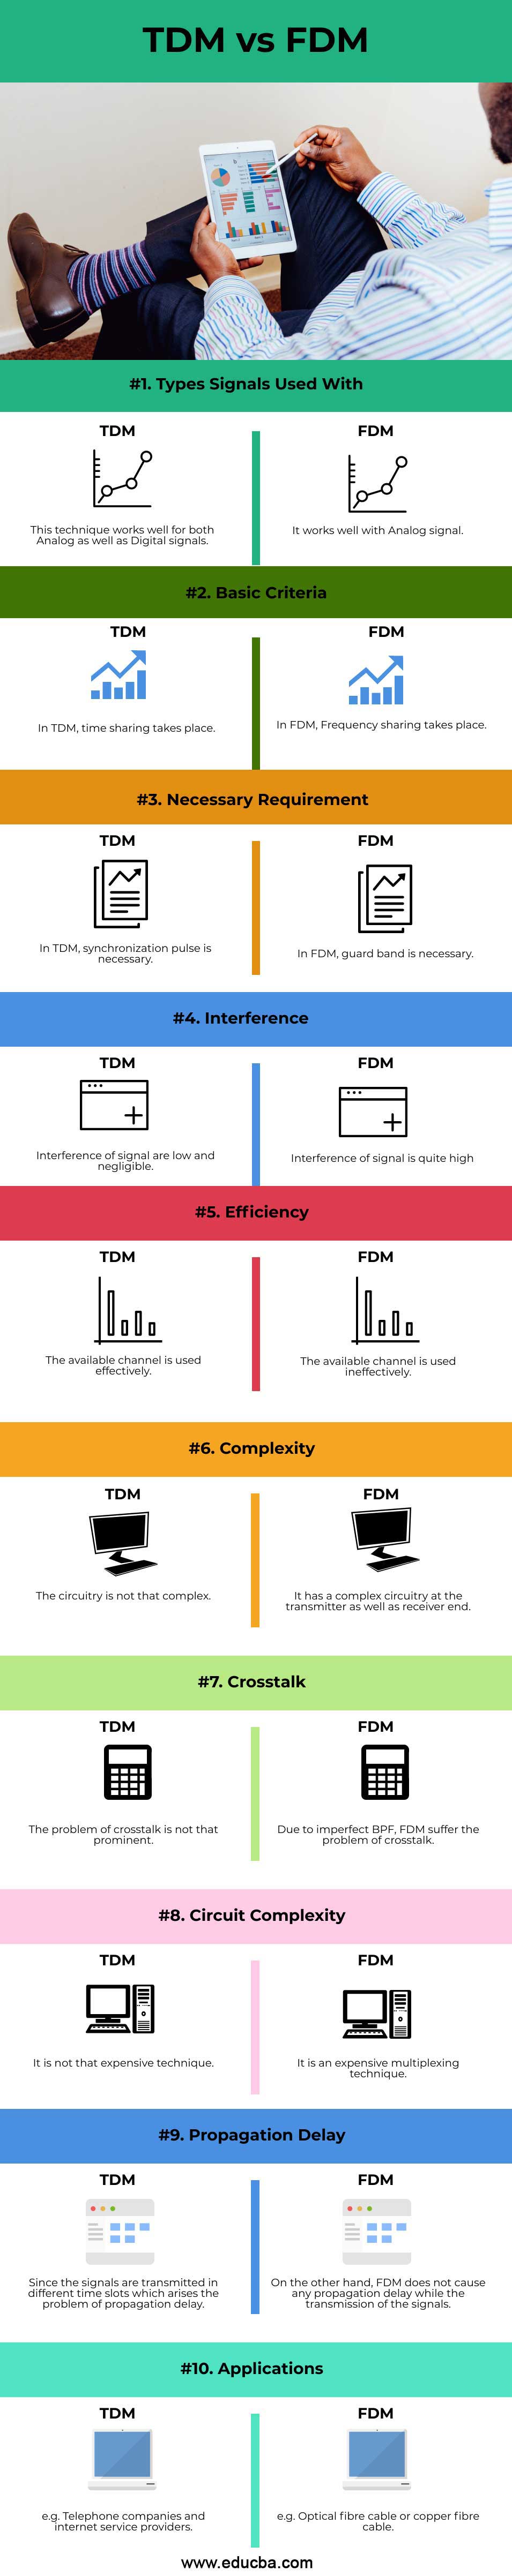 TDM-vs-FDM-info